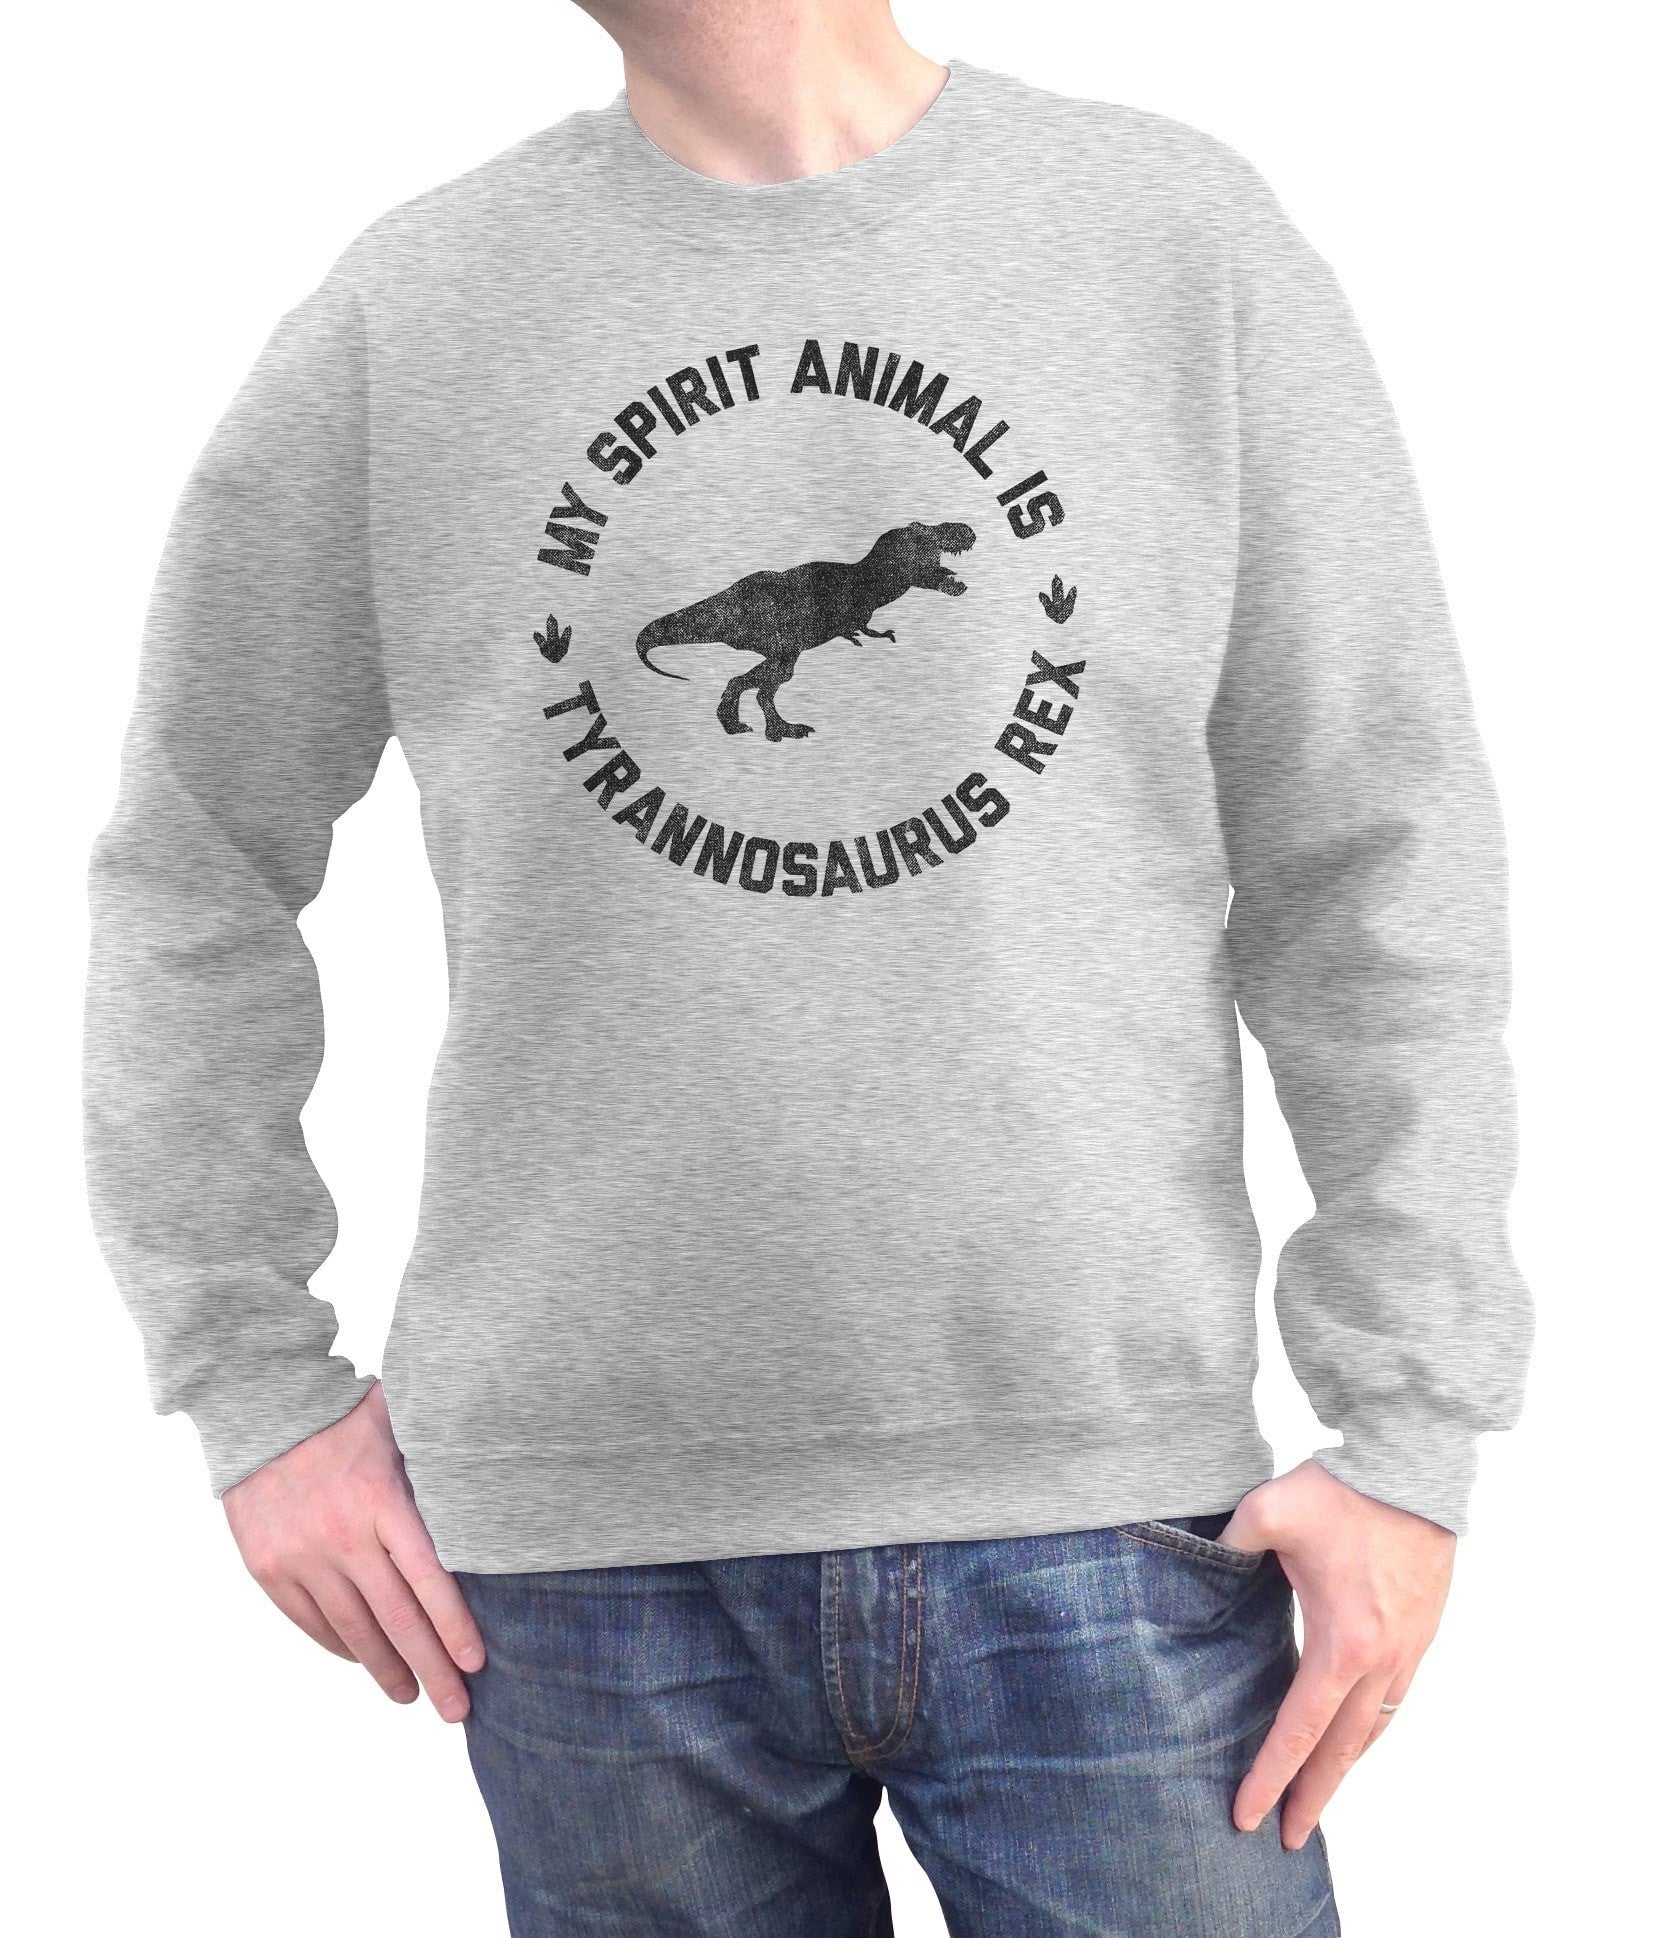 Unisex My Spirit Animal is T-Rex Sweatshirt